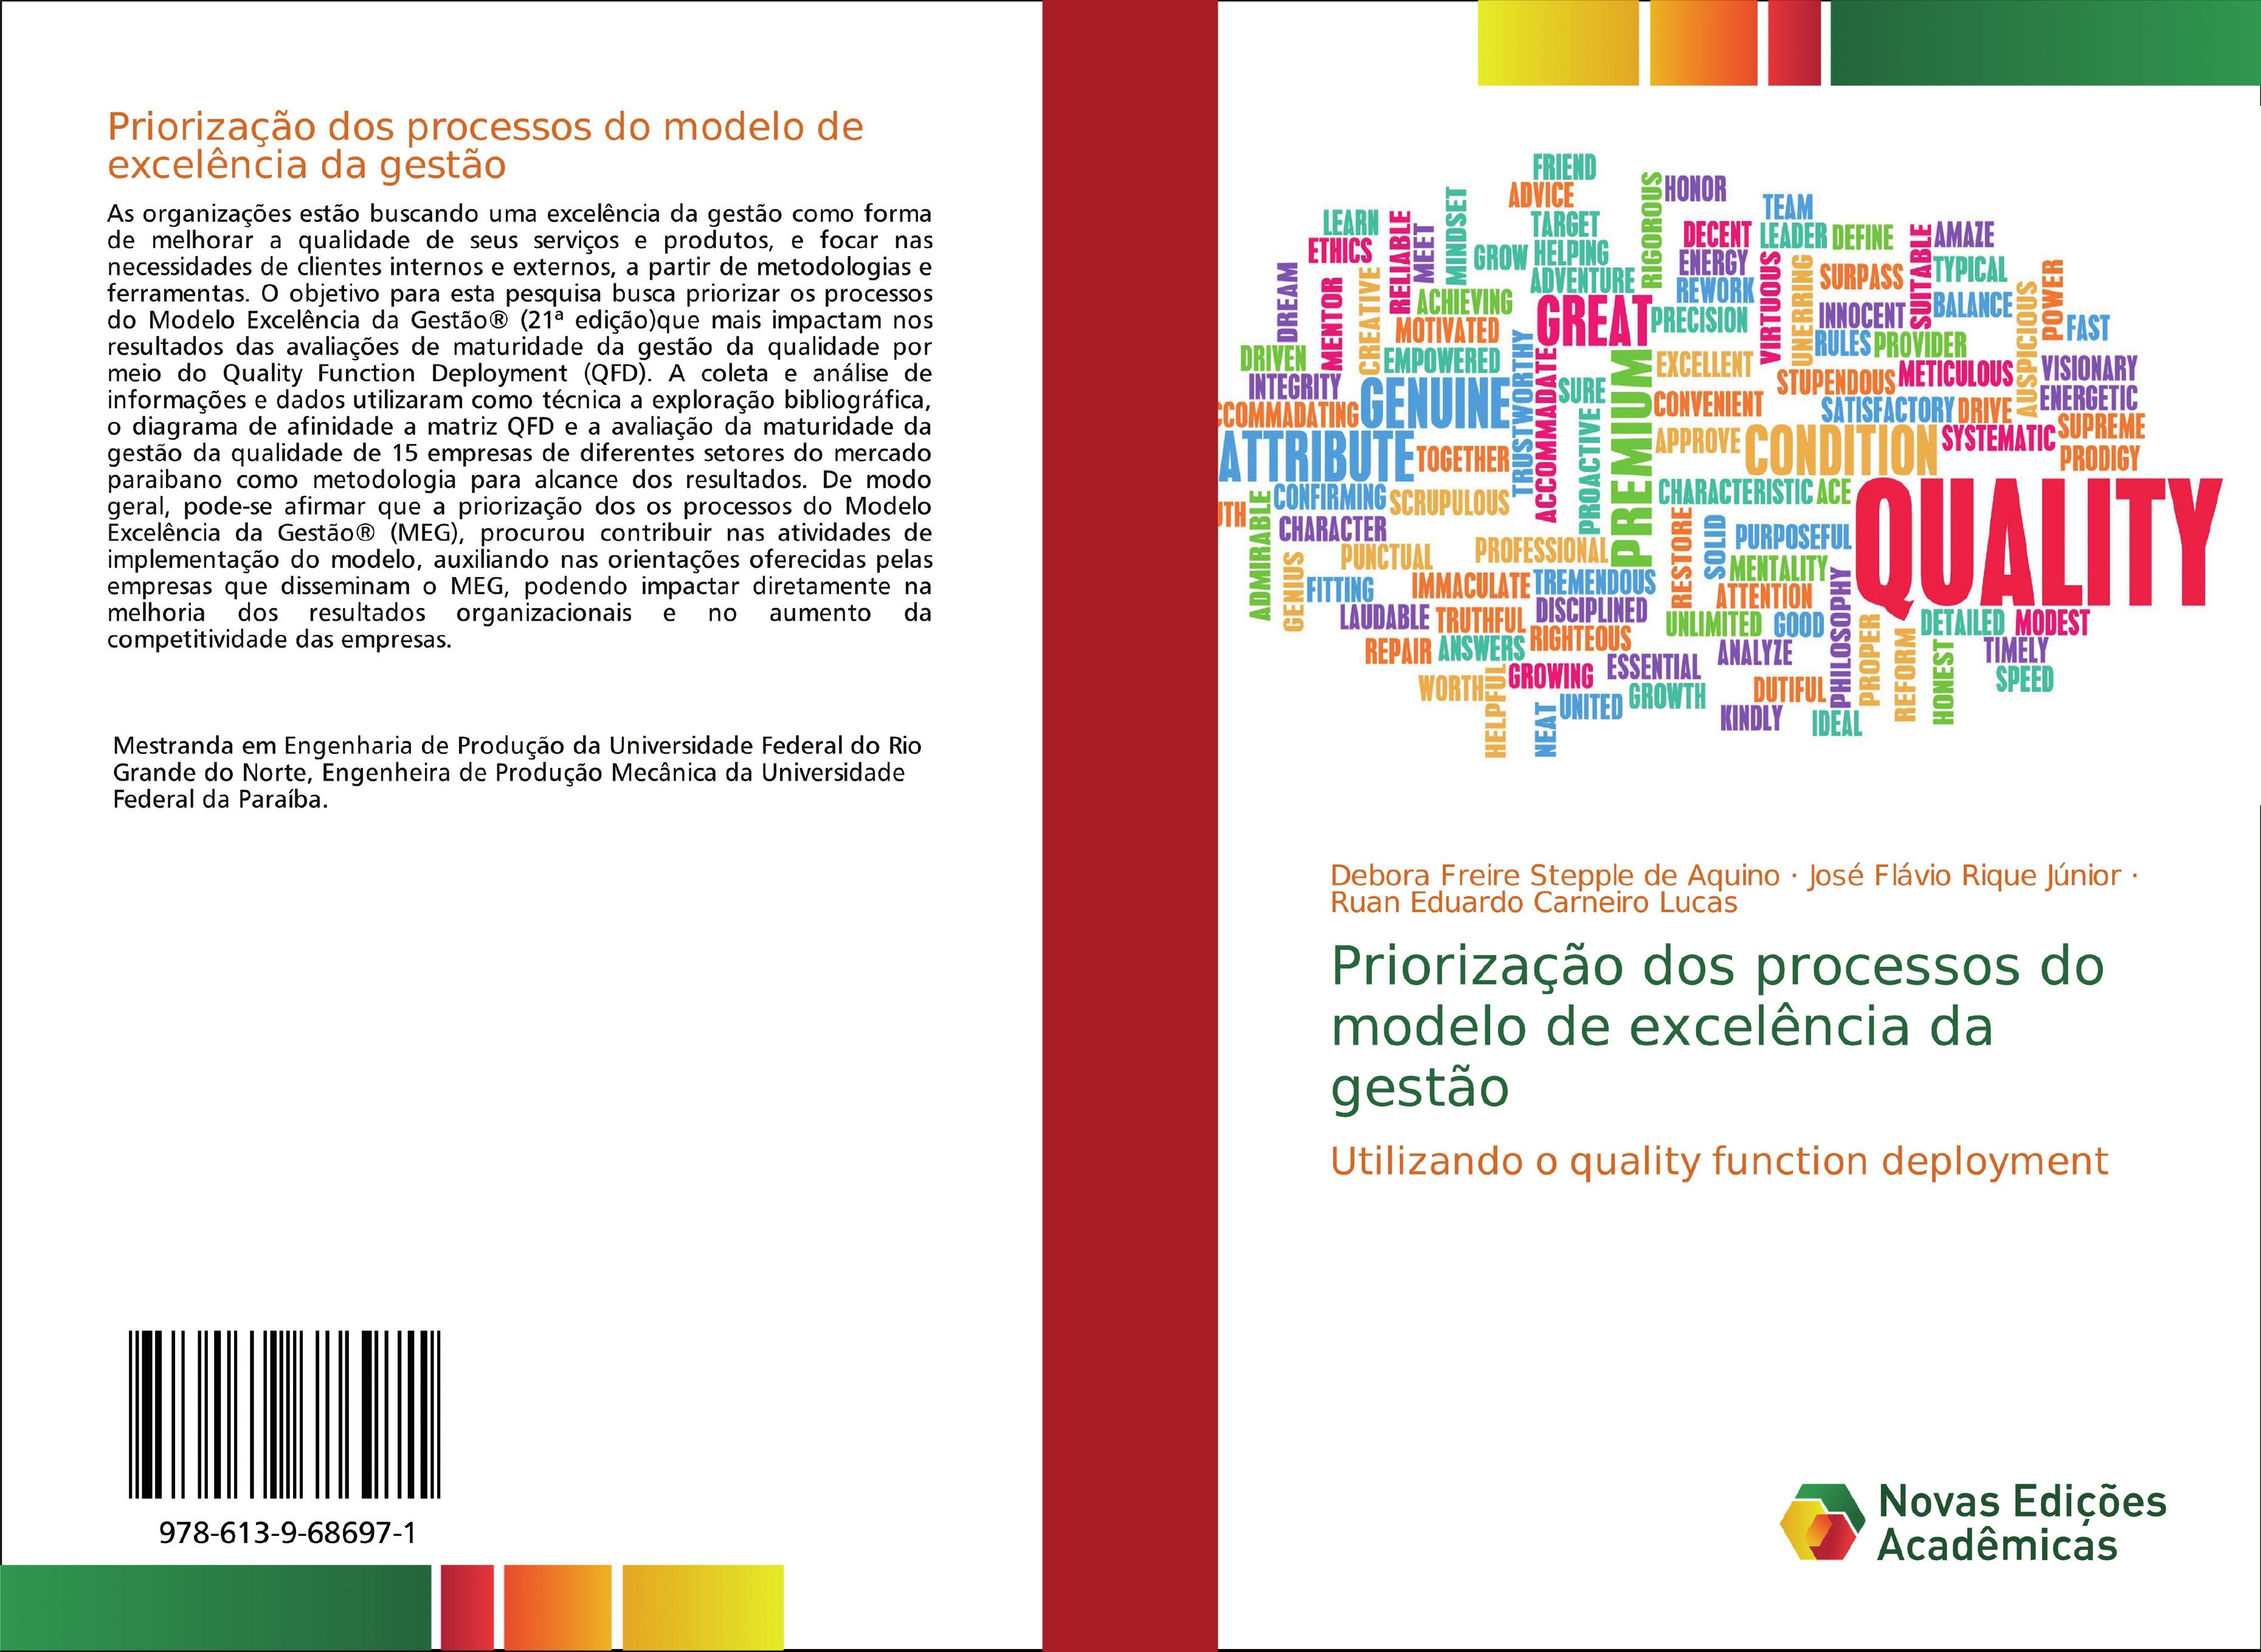 Priorização dos processos do modelo de excelência da gestão - Freire Stepple de Aquino, Debora Rique Júnior, José Flávio Carneiro Lucas, Ruan Eduardo